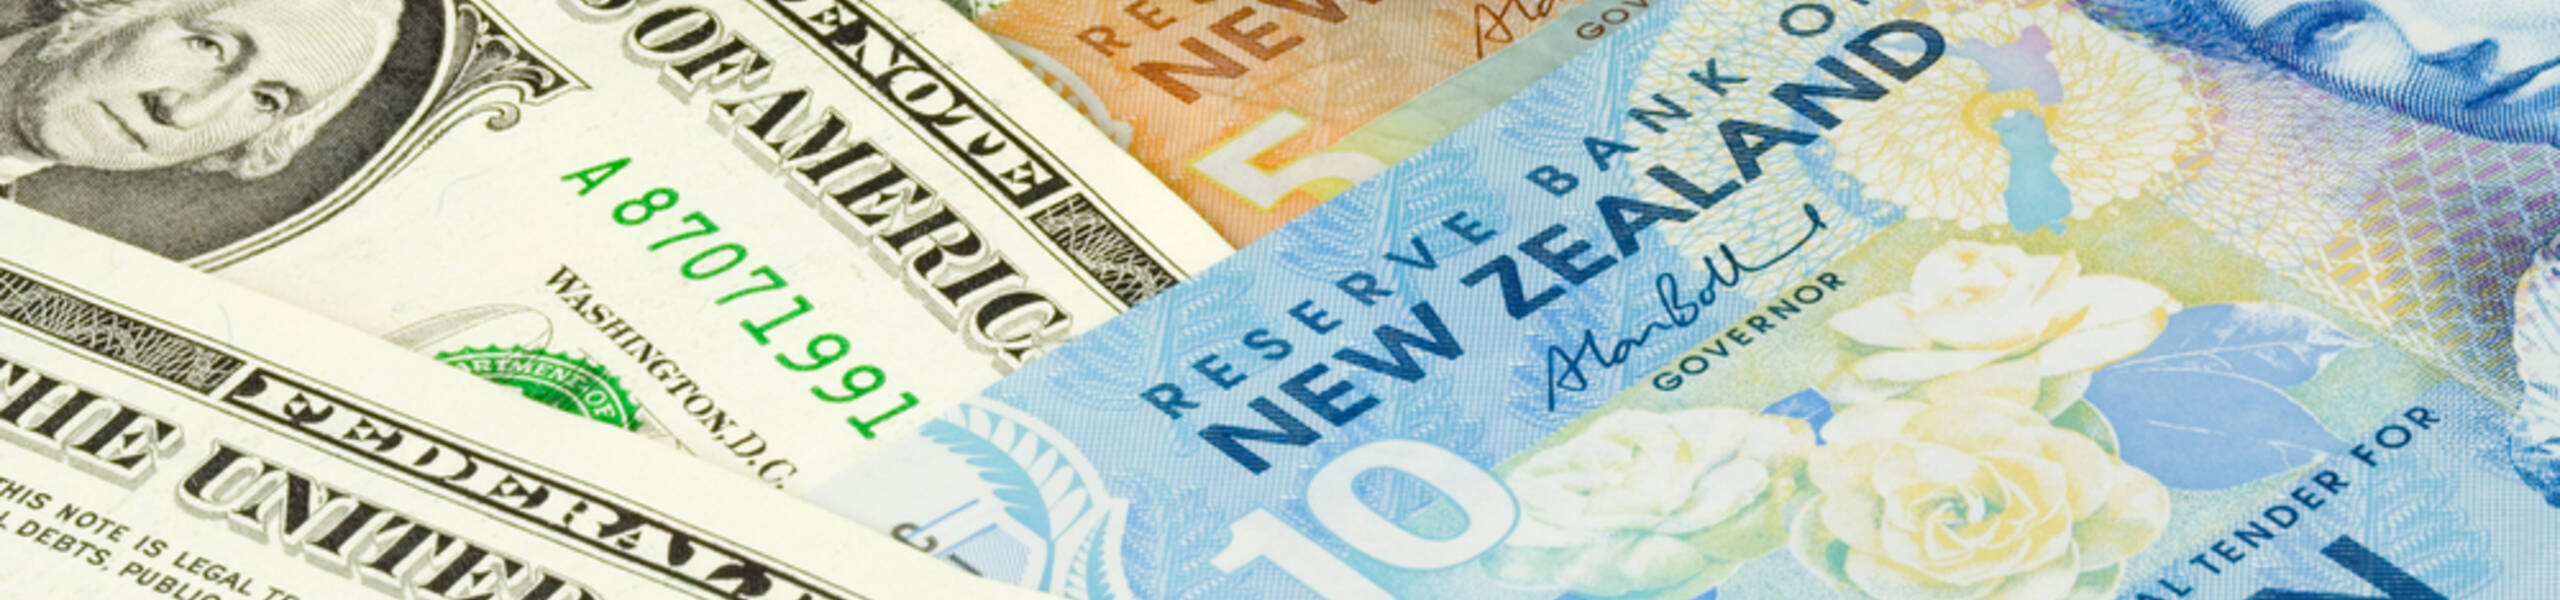 Kế hoạch giao dịch cặp ngoại tệ NZDUSD ngày 05/07/2019